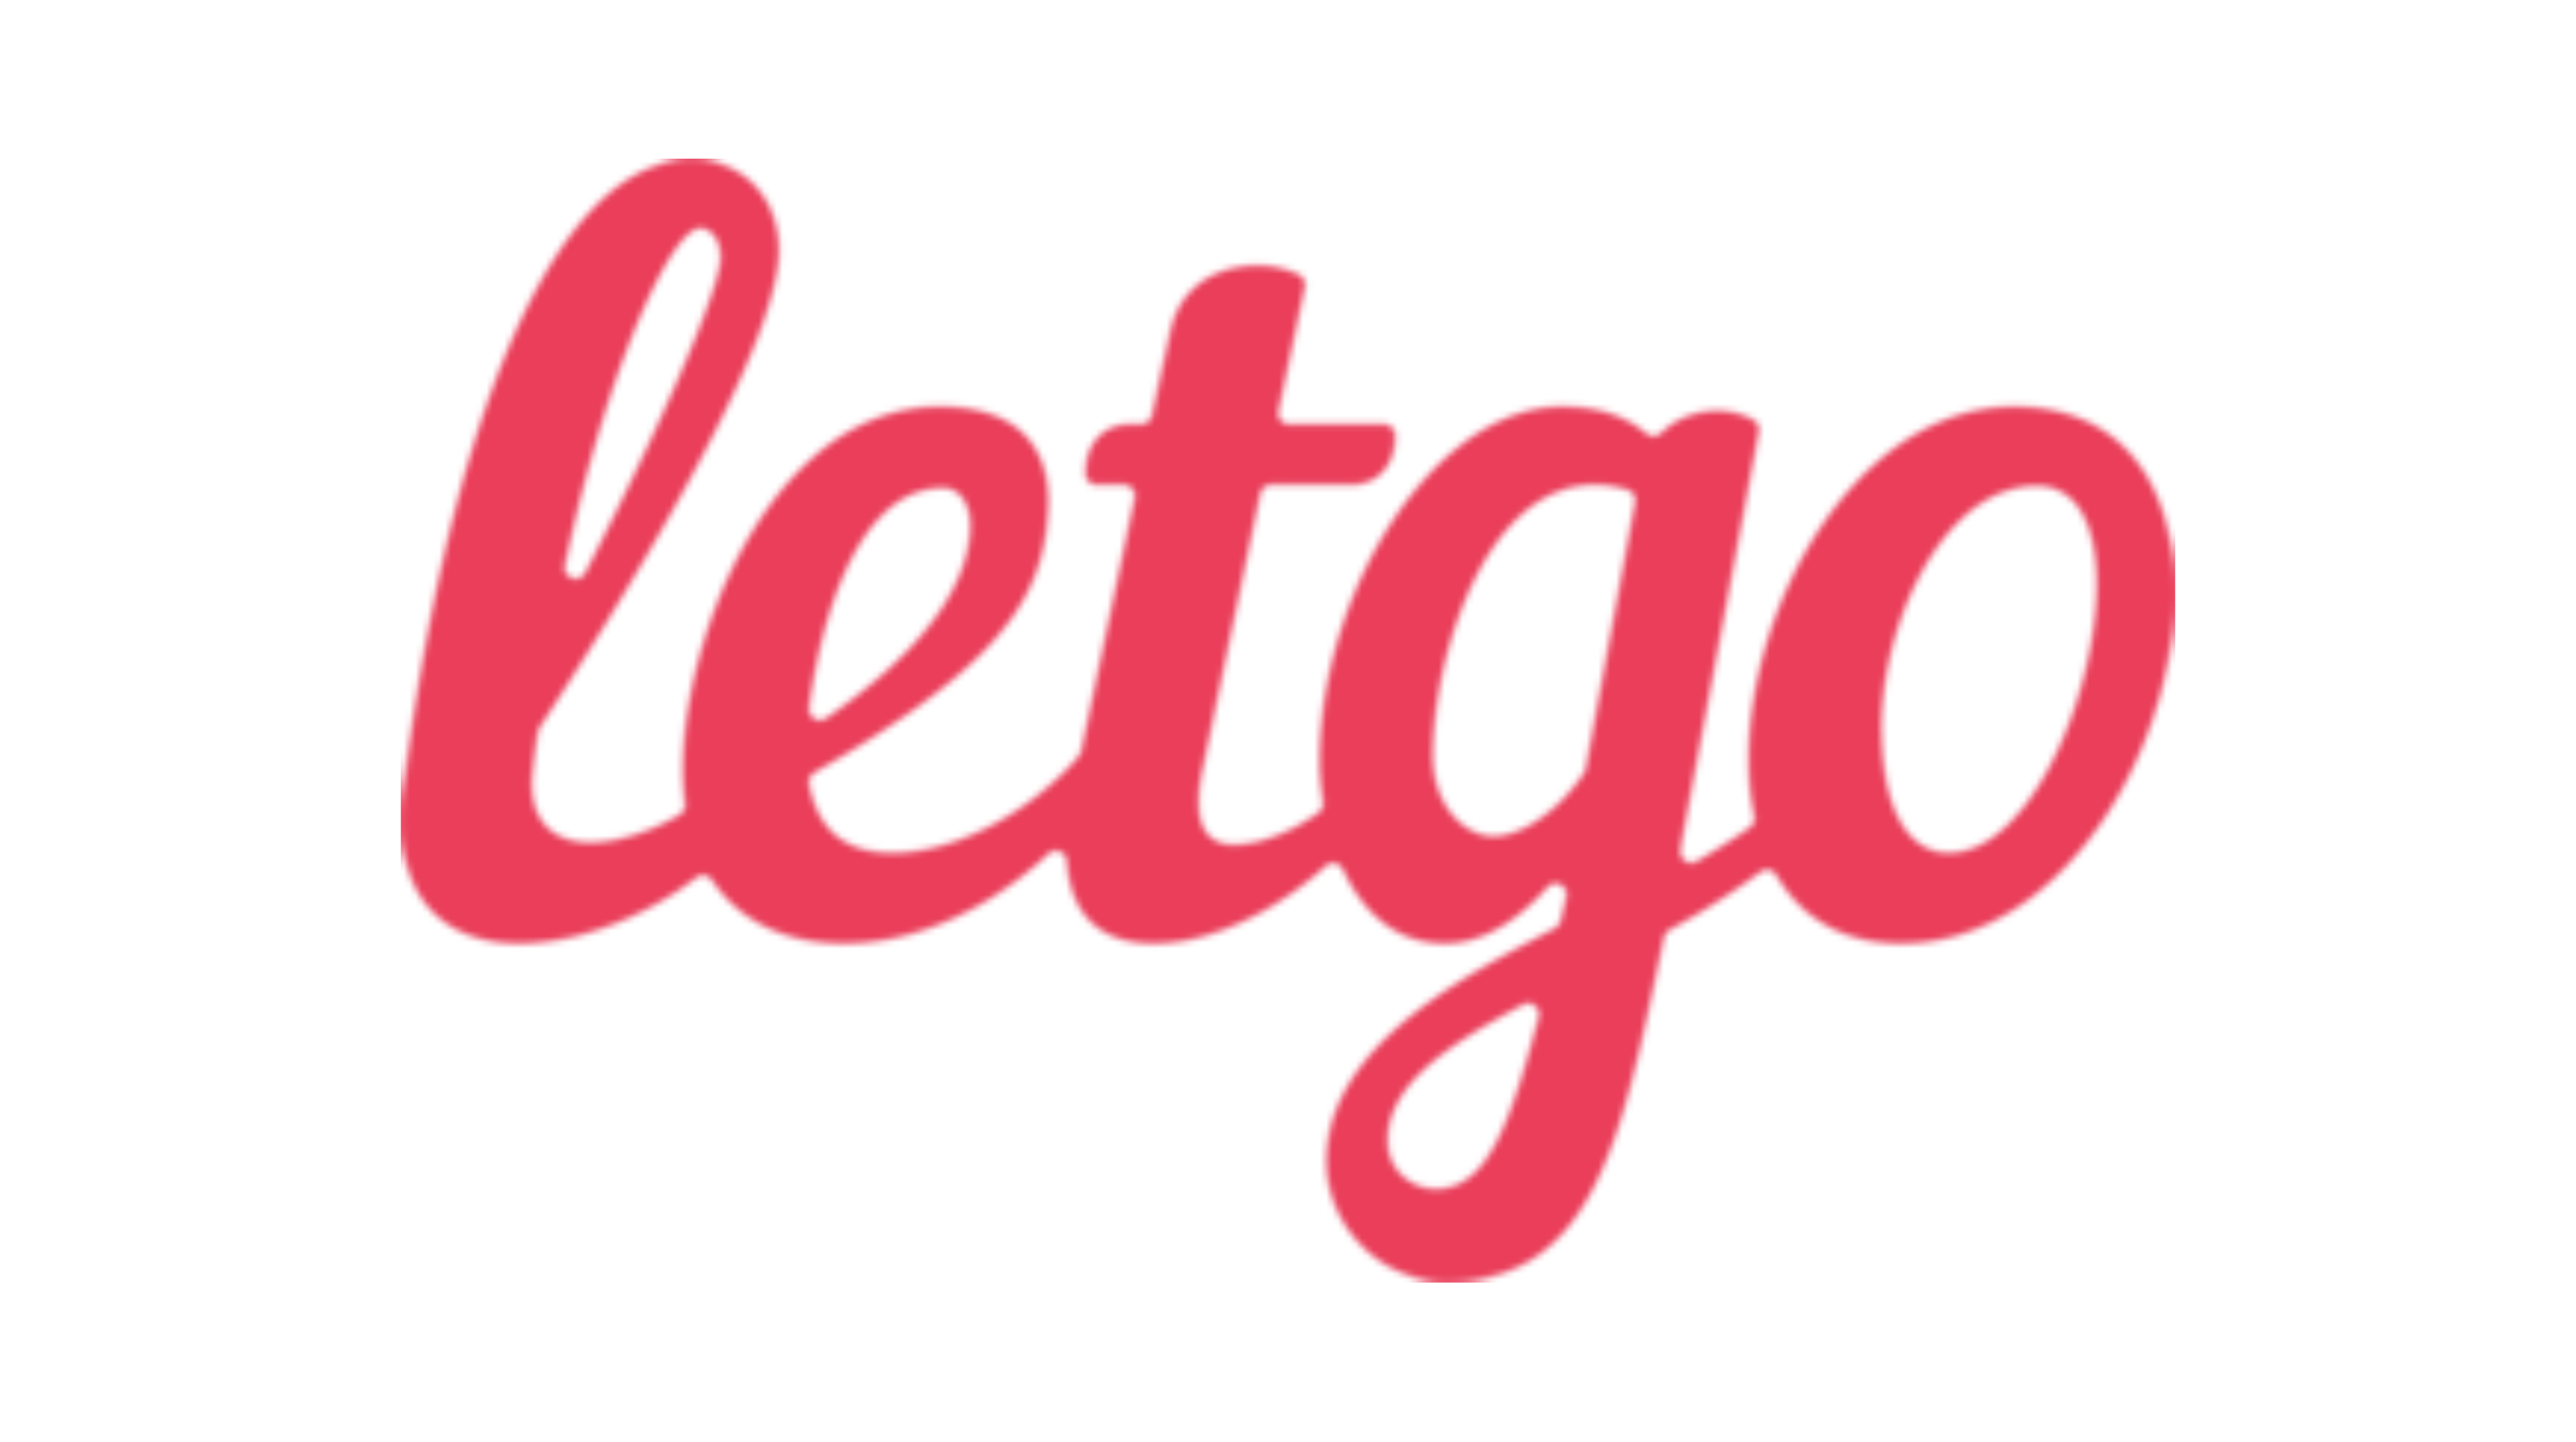 LetGoLogo